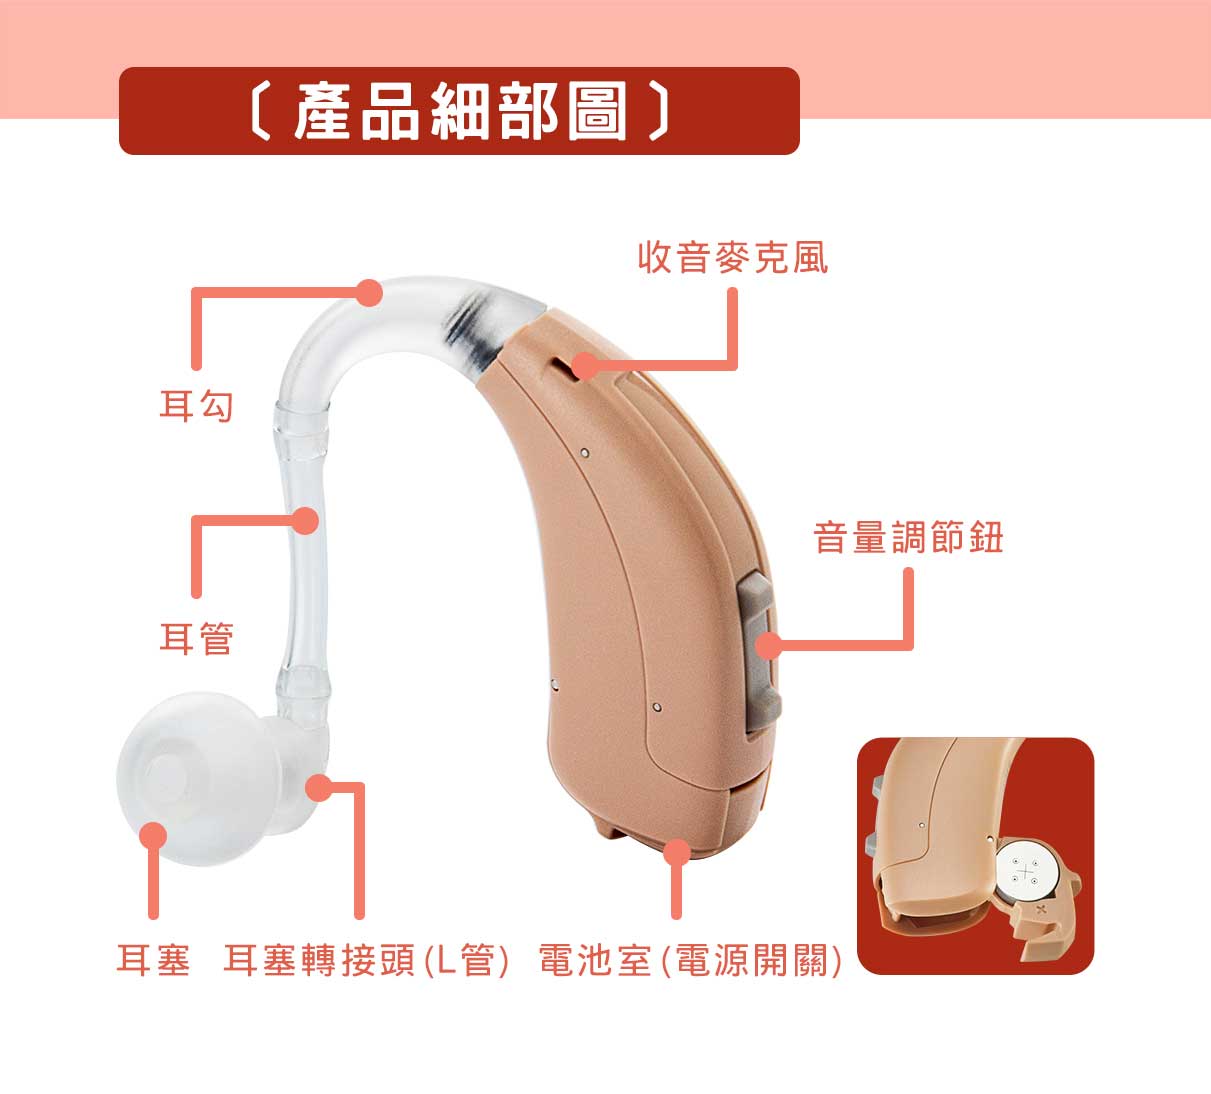 耳寶助聽器 耳掛助聽器 BE90(6DA1) 產品細部介紹